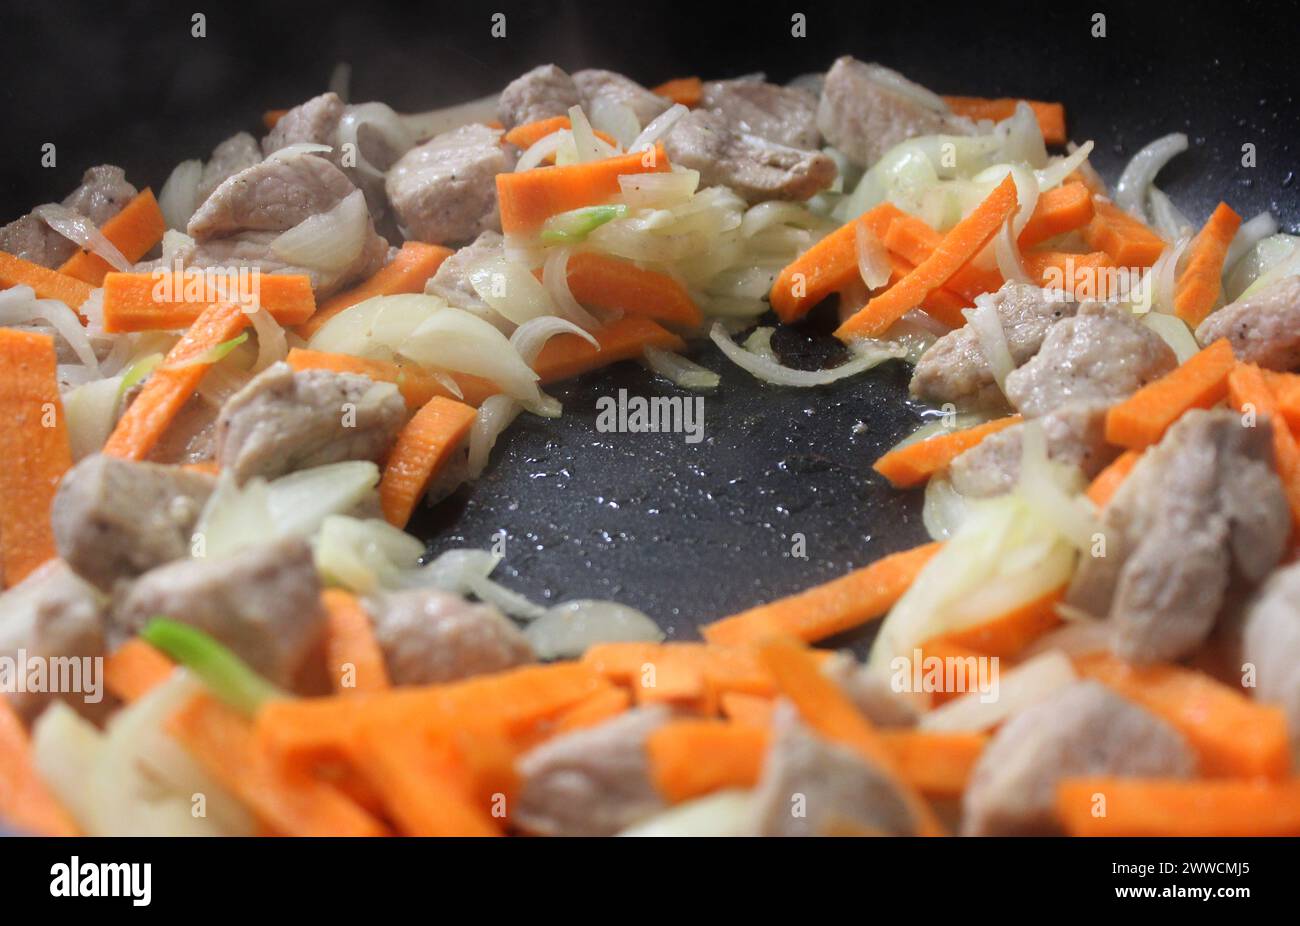 Morceaux de viande de porc, oignon et carotte cuits dans Une poêle avec de l'huile d'olive Banque D'Images